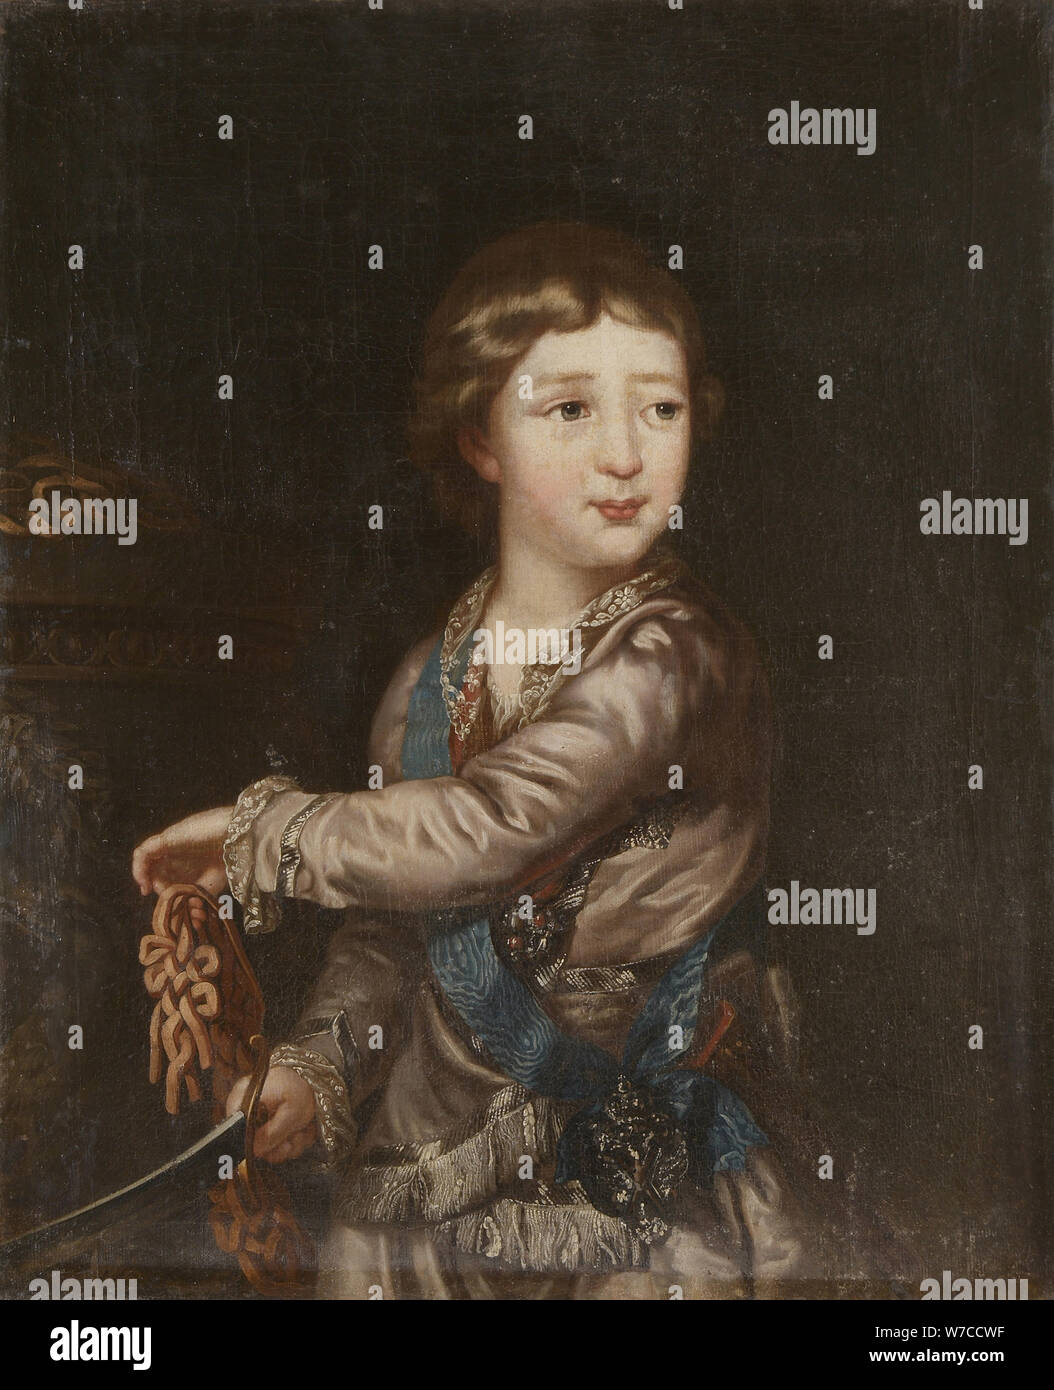 Ritratto del granduca Alessandro Pavlovich (1777-1825) come bambino. Foto Stock